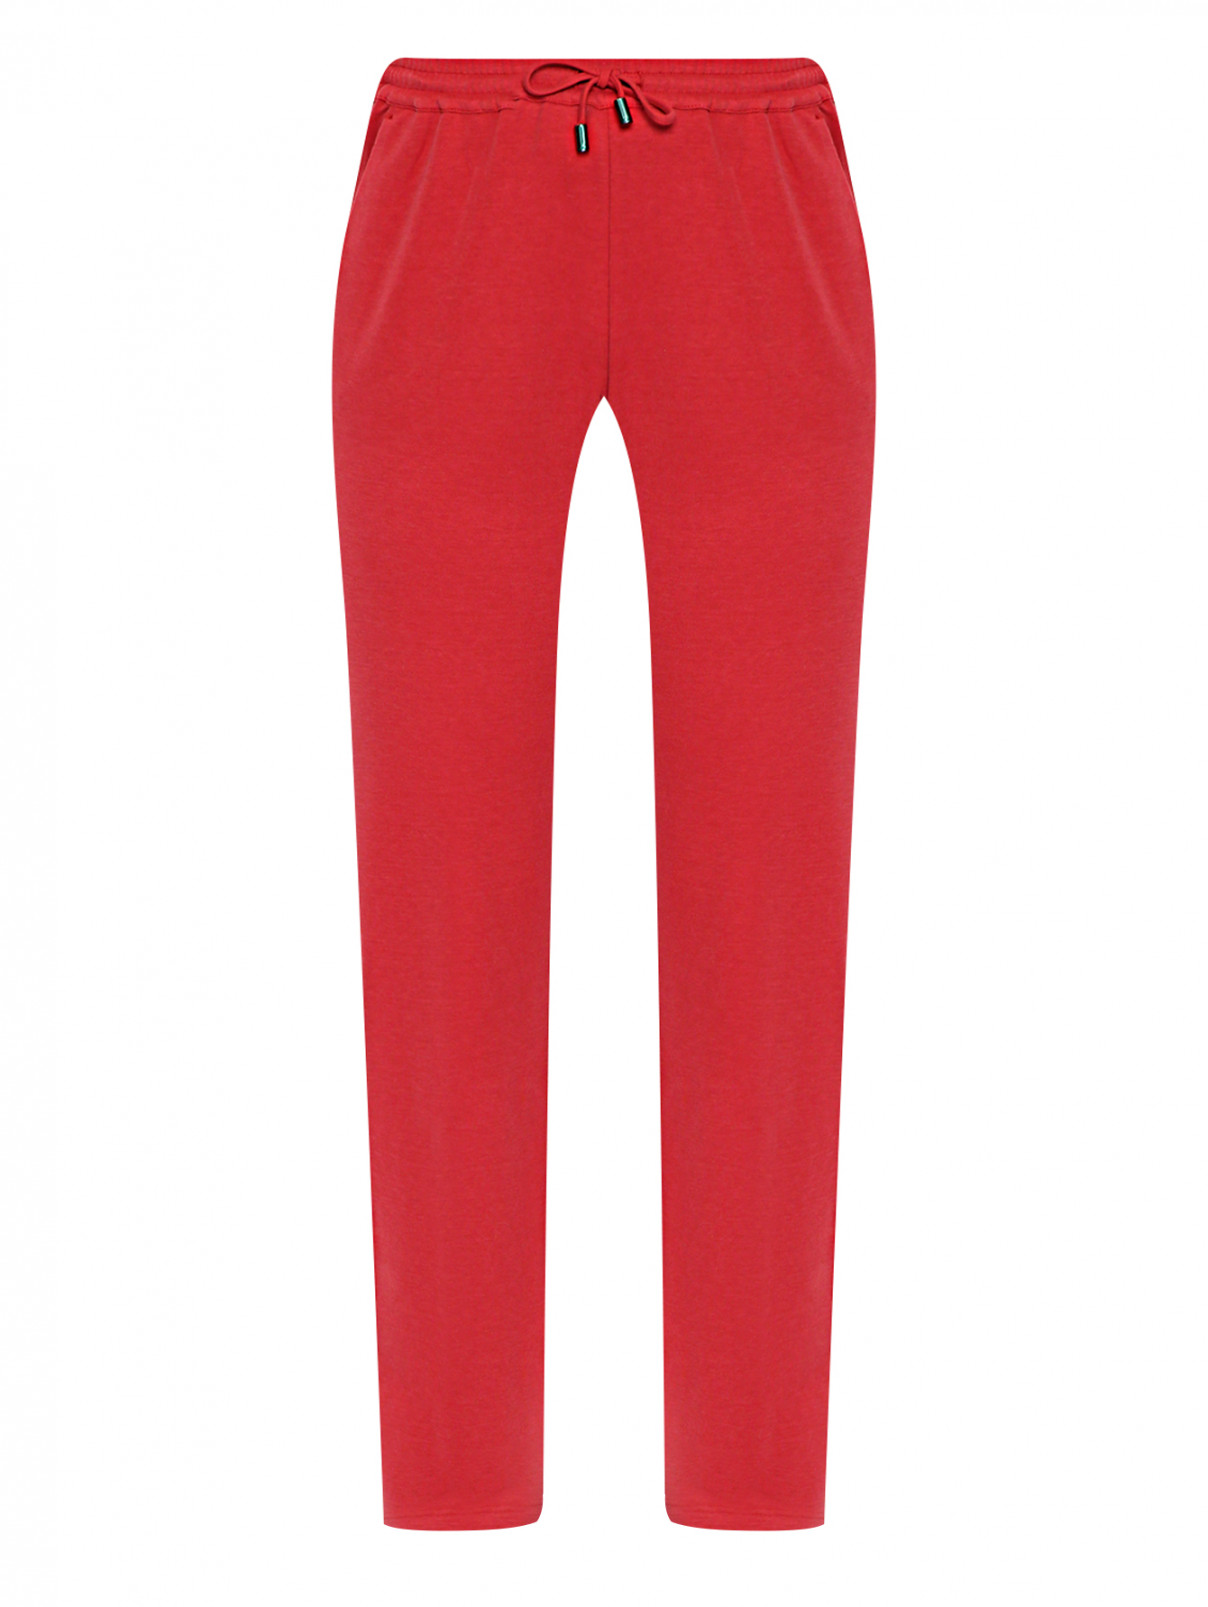 Трикотажные брюки на резинке с карманами Marina Rinaldi  –  Общий вид  – Цвет:  Красный